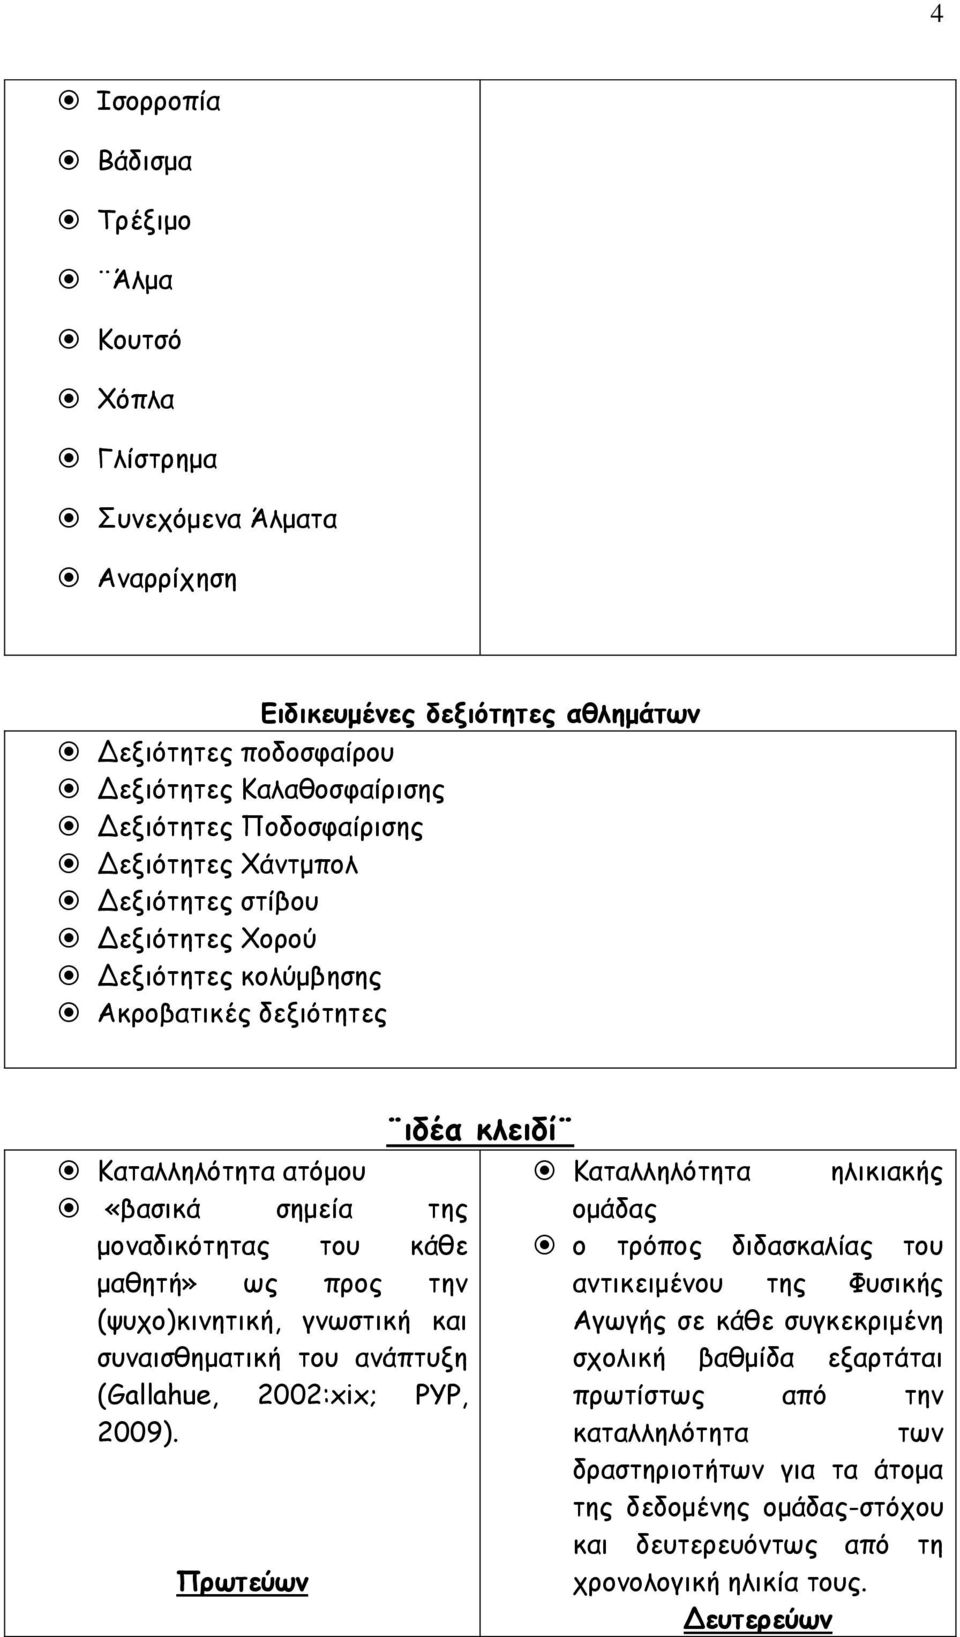 (ψυχο)κινητική, γνωστική και συναισθηματική του ανάπτυξη (Gallahue, 2002:xix; PYP, 2009).